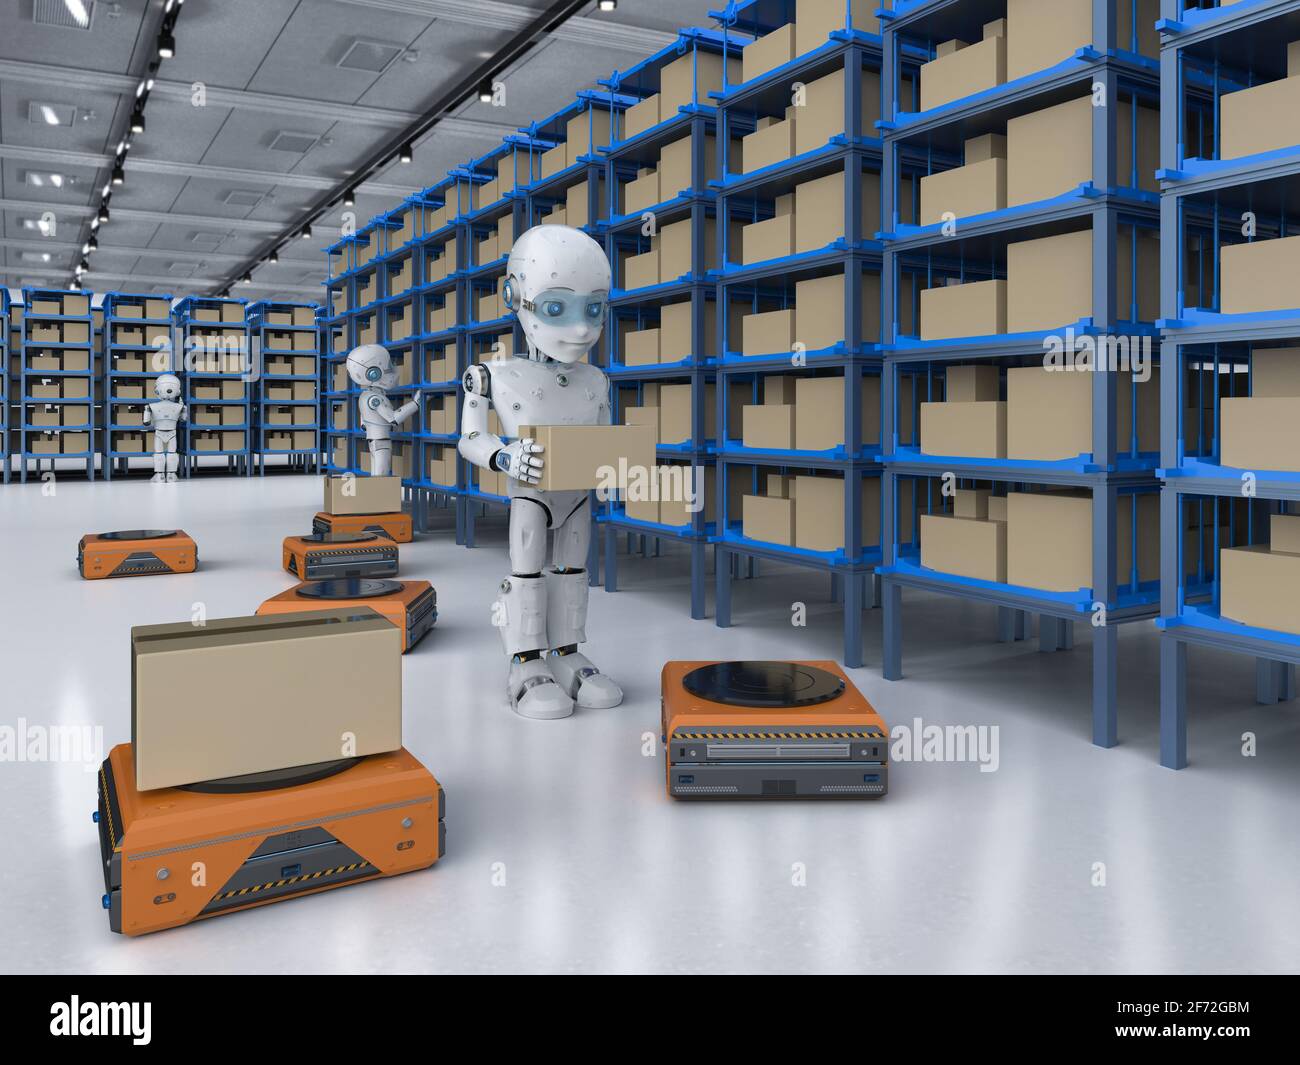 Hochregallager Konzept mit 3D-rendering Automatisierung Roboter arbeiten im  Lager Stockfotografie - Alamy